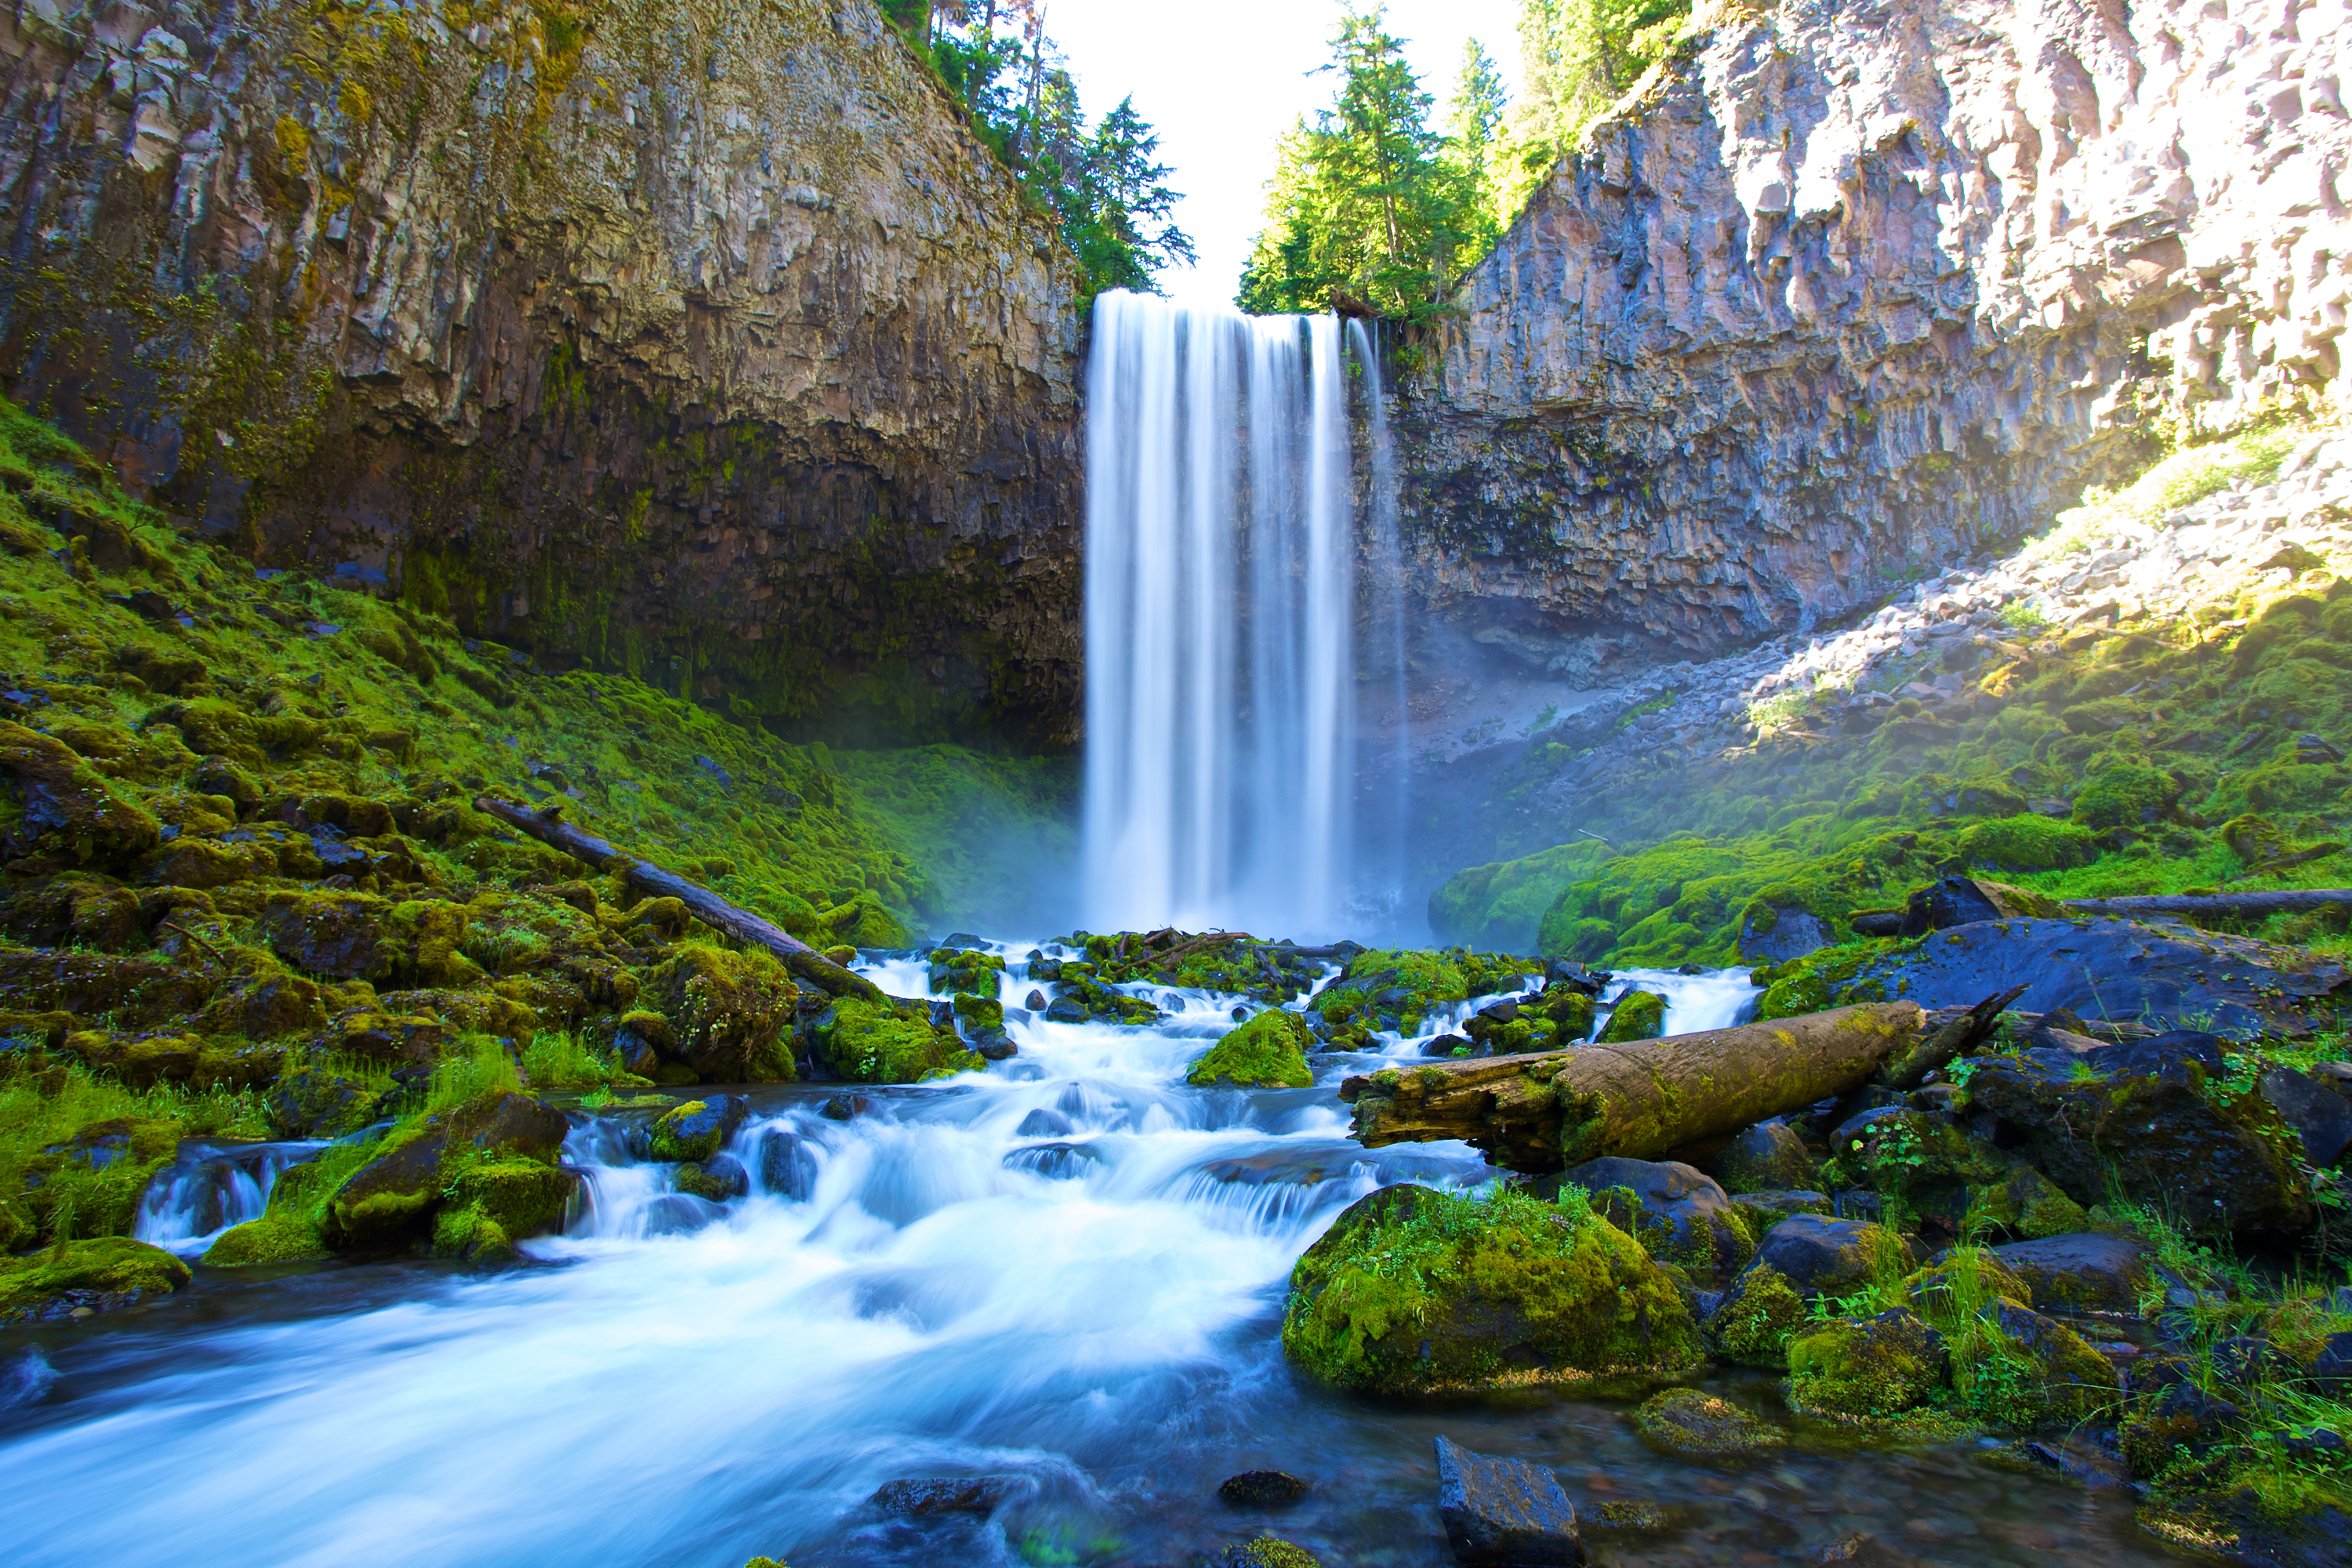 Waterfall in Oregon by Zach Dischner